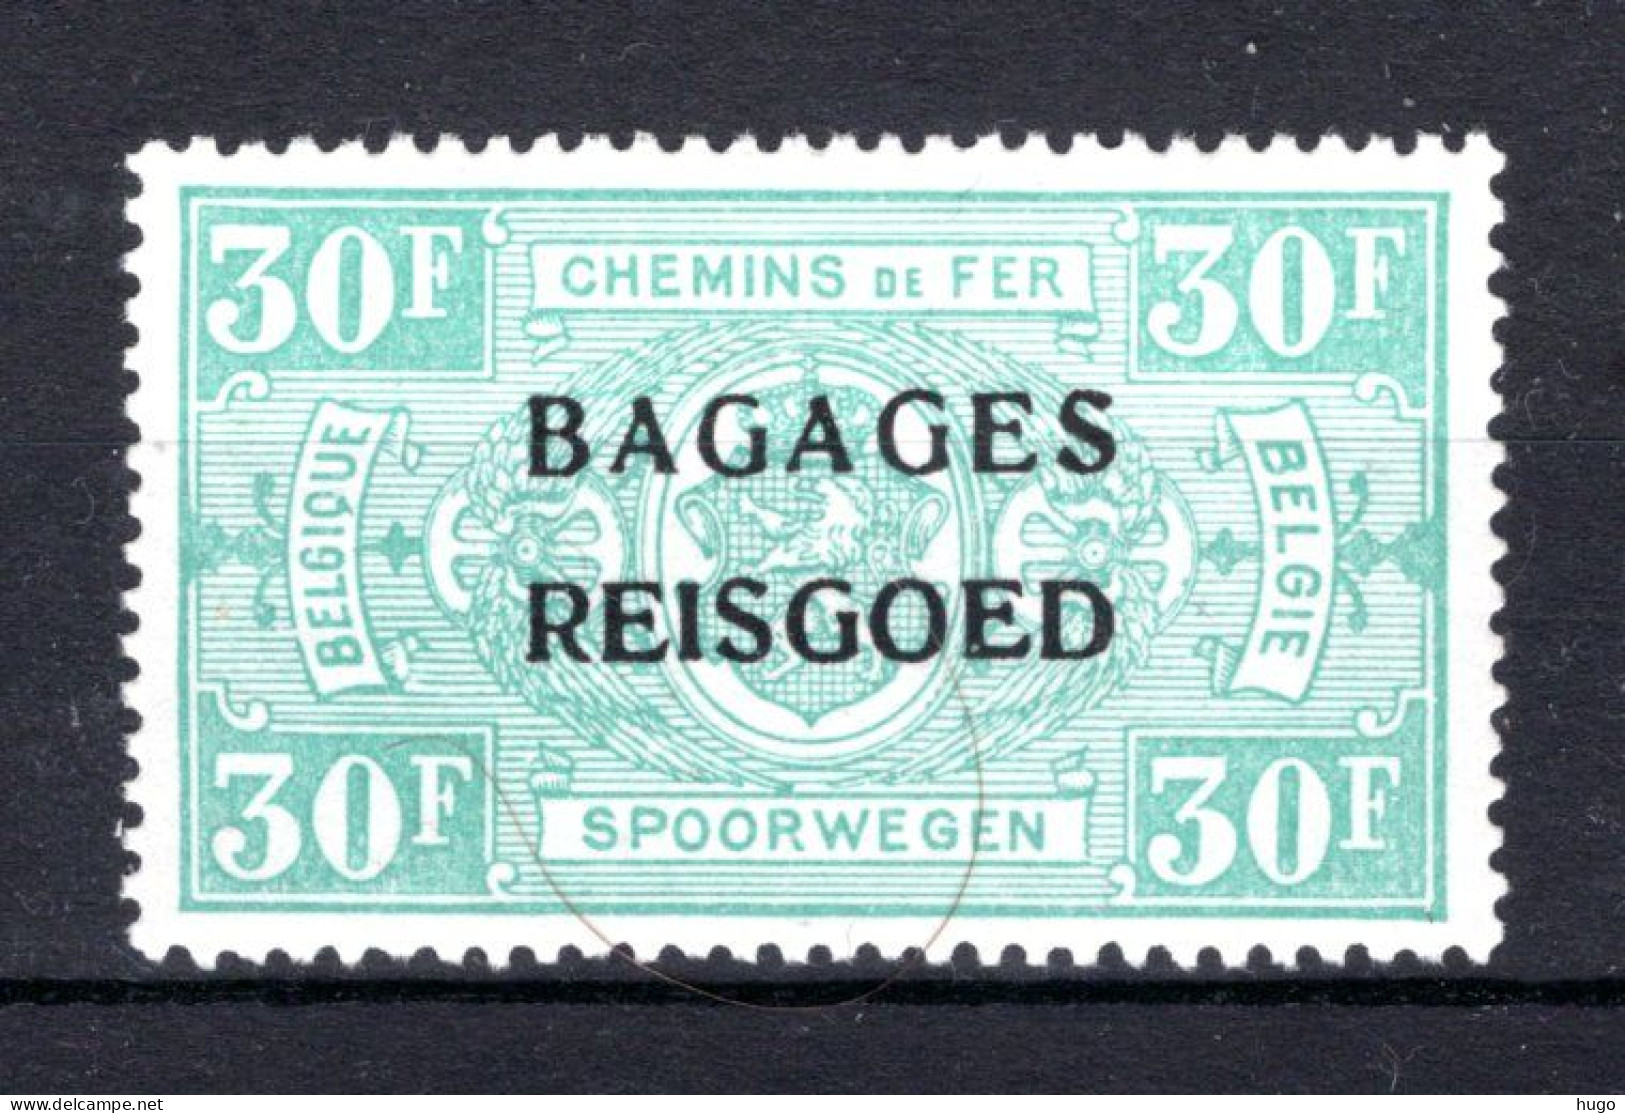 BA21 MH* 1935 - Spoorwegzegels Met Opdruk "BAGAGES - REISGOED"  - Reisgoedzegels [BA]